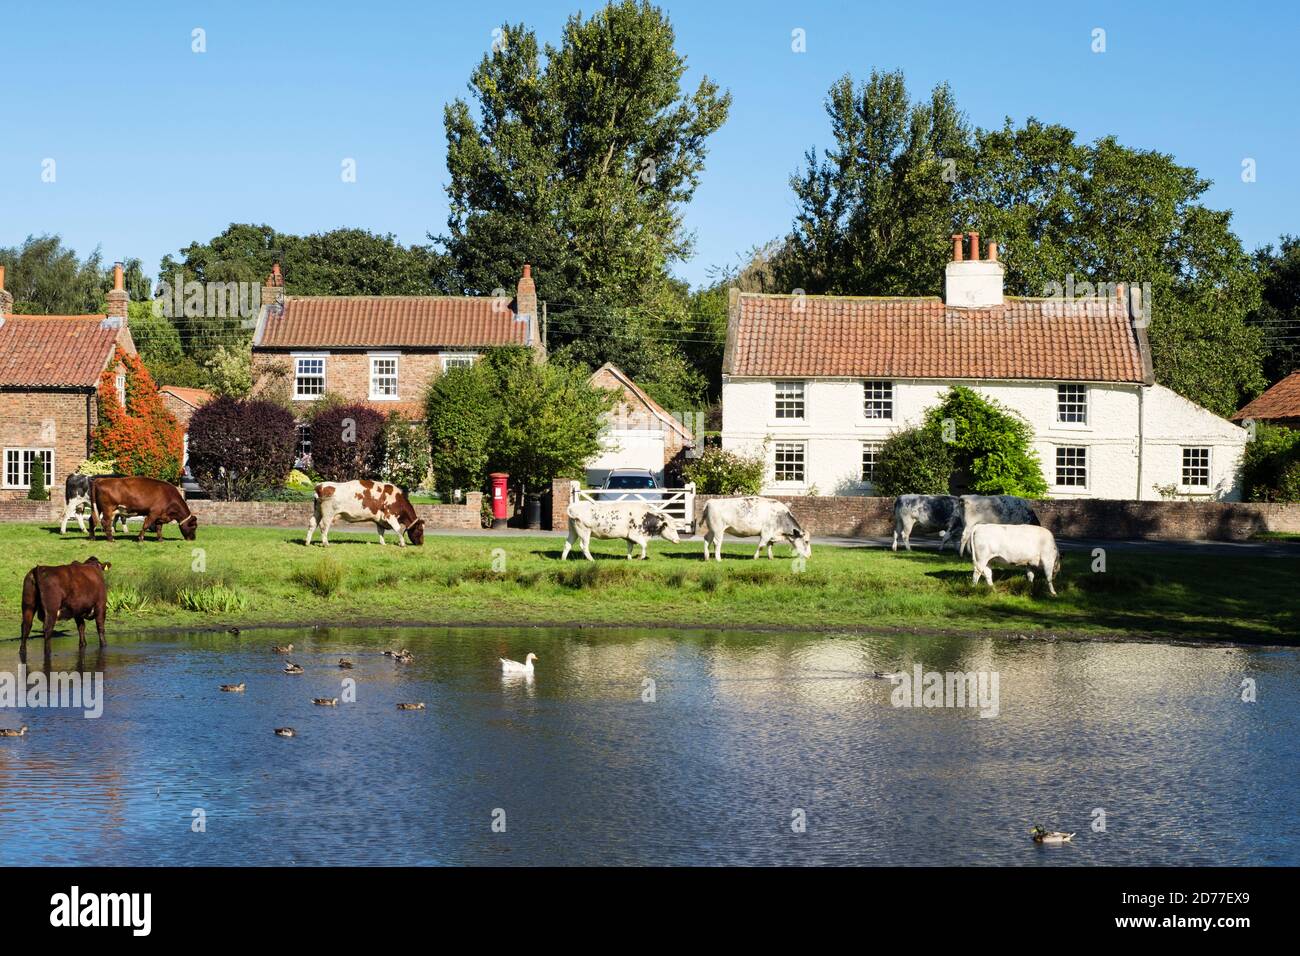 Élevage de bétail gratuit paître par un étang de canard sur un village pittoresque vert. Nun Monkton, York, Yorkshire du Nord, Angleterre, Royaume-Uni, Grande-Bretagne Banque D'Images